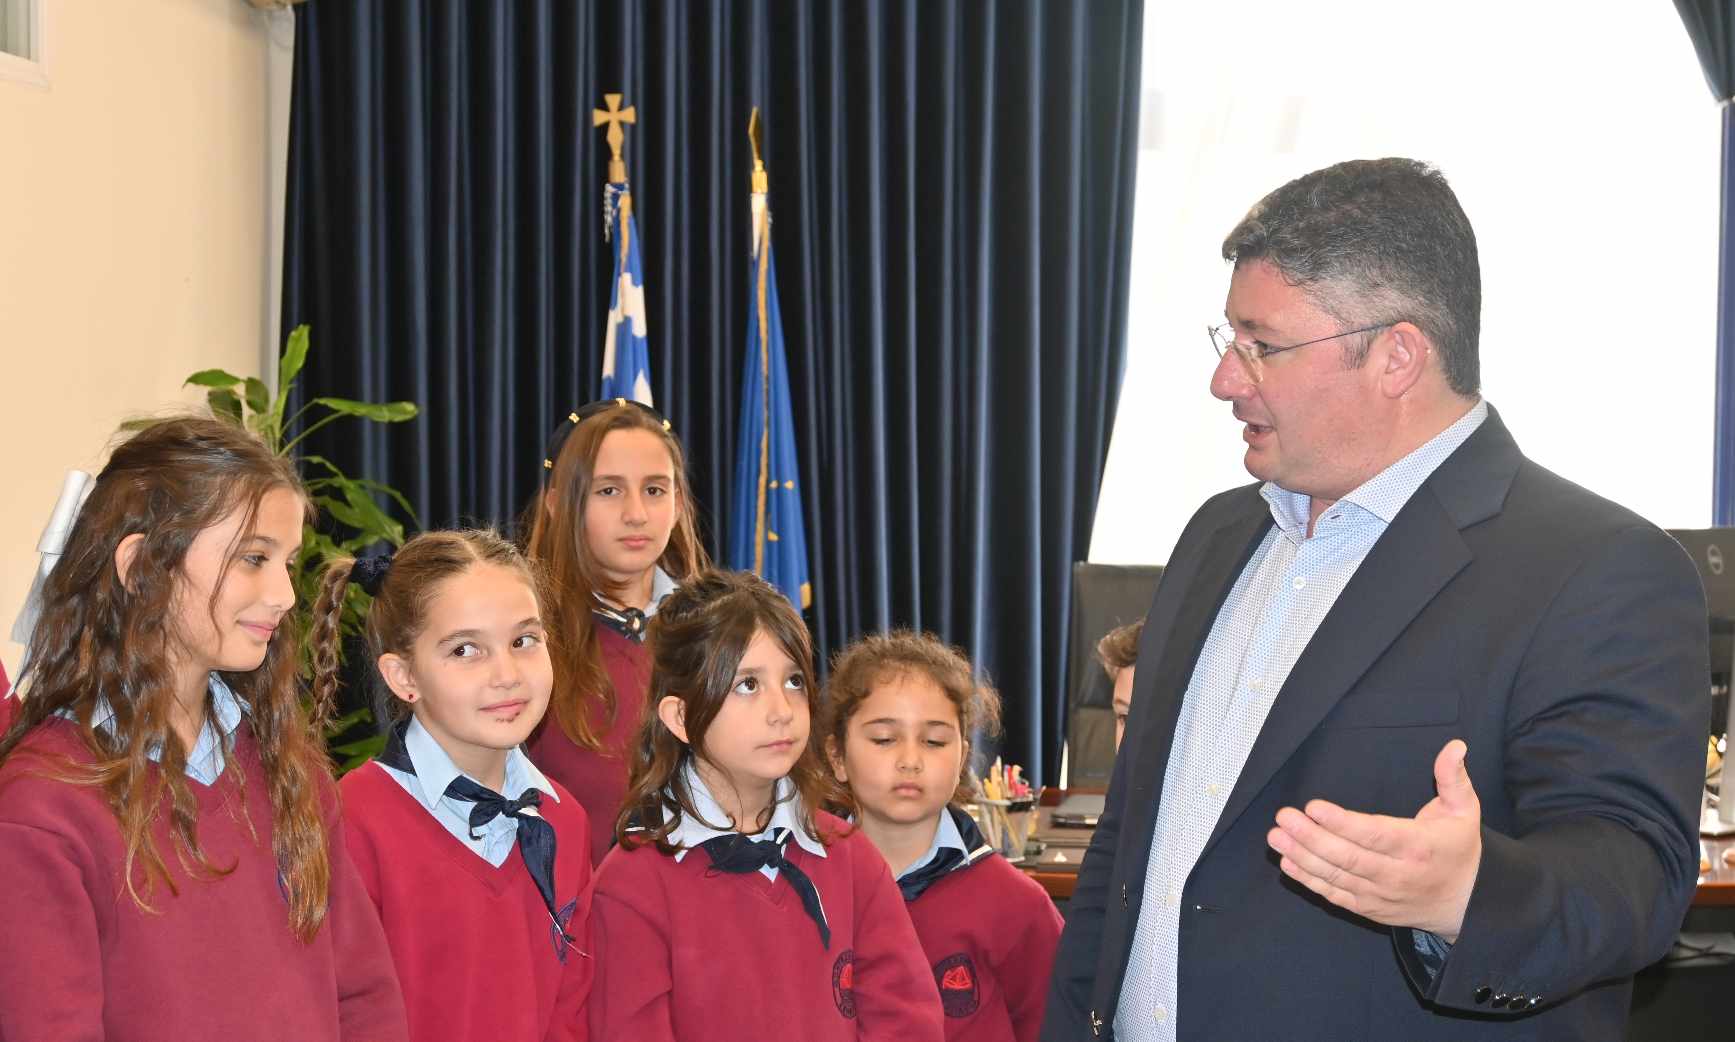 Προσφορά αγάπης και αλληλεγγύης από τα Μοντεσσοριανά σχολεία στον Δήμο Αχαρνών